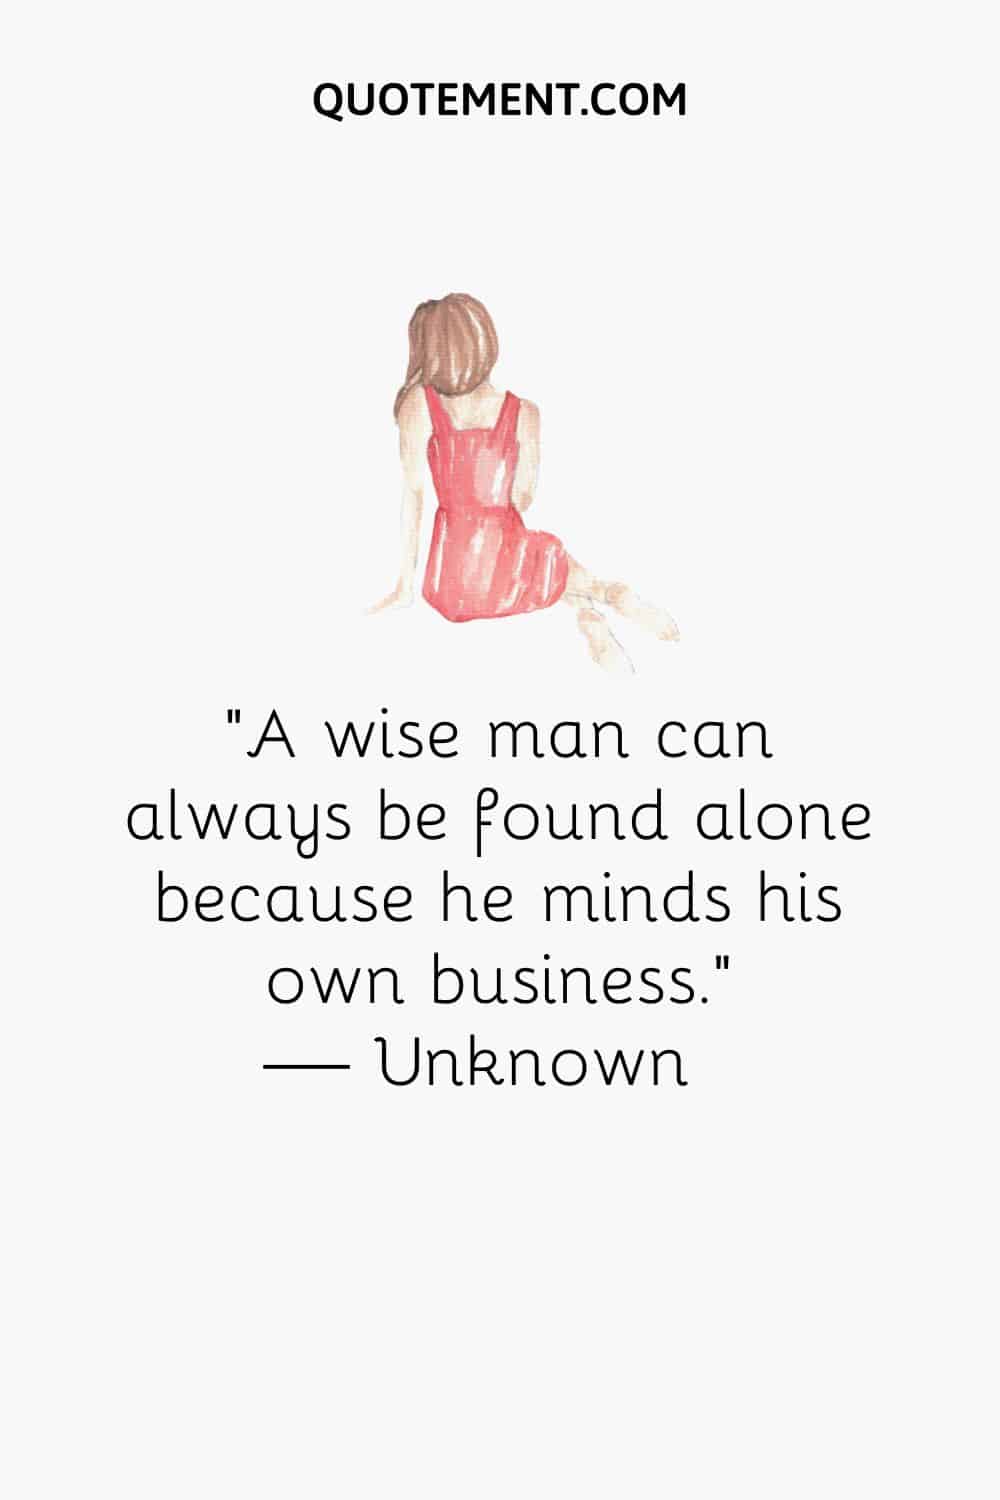 A un hombre sabio siempre se le puede encontrar solo porque se ocupa de sus propios asuntos